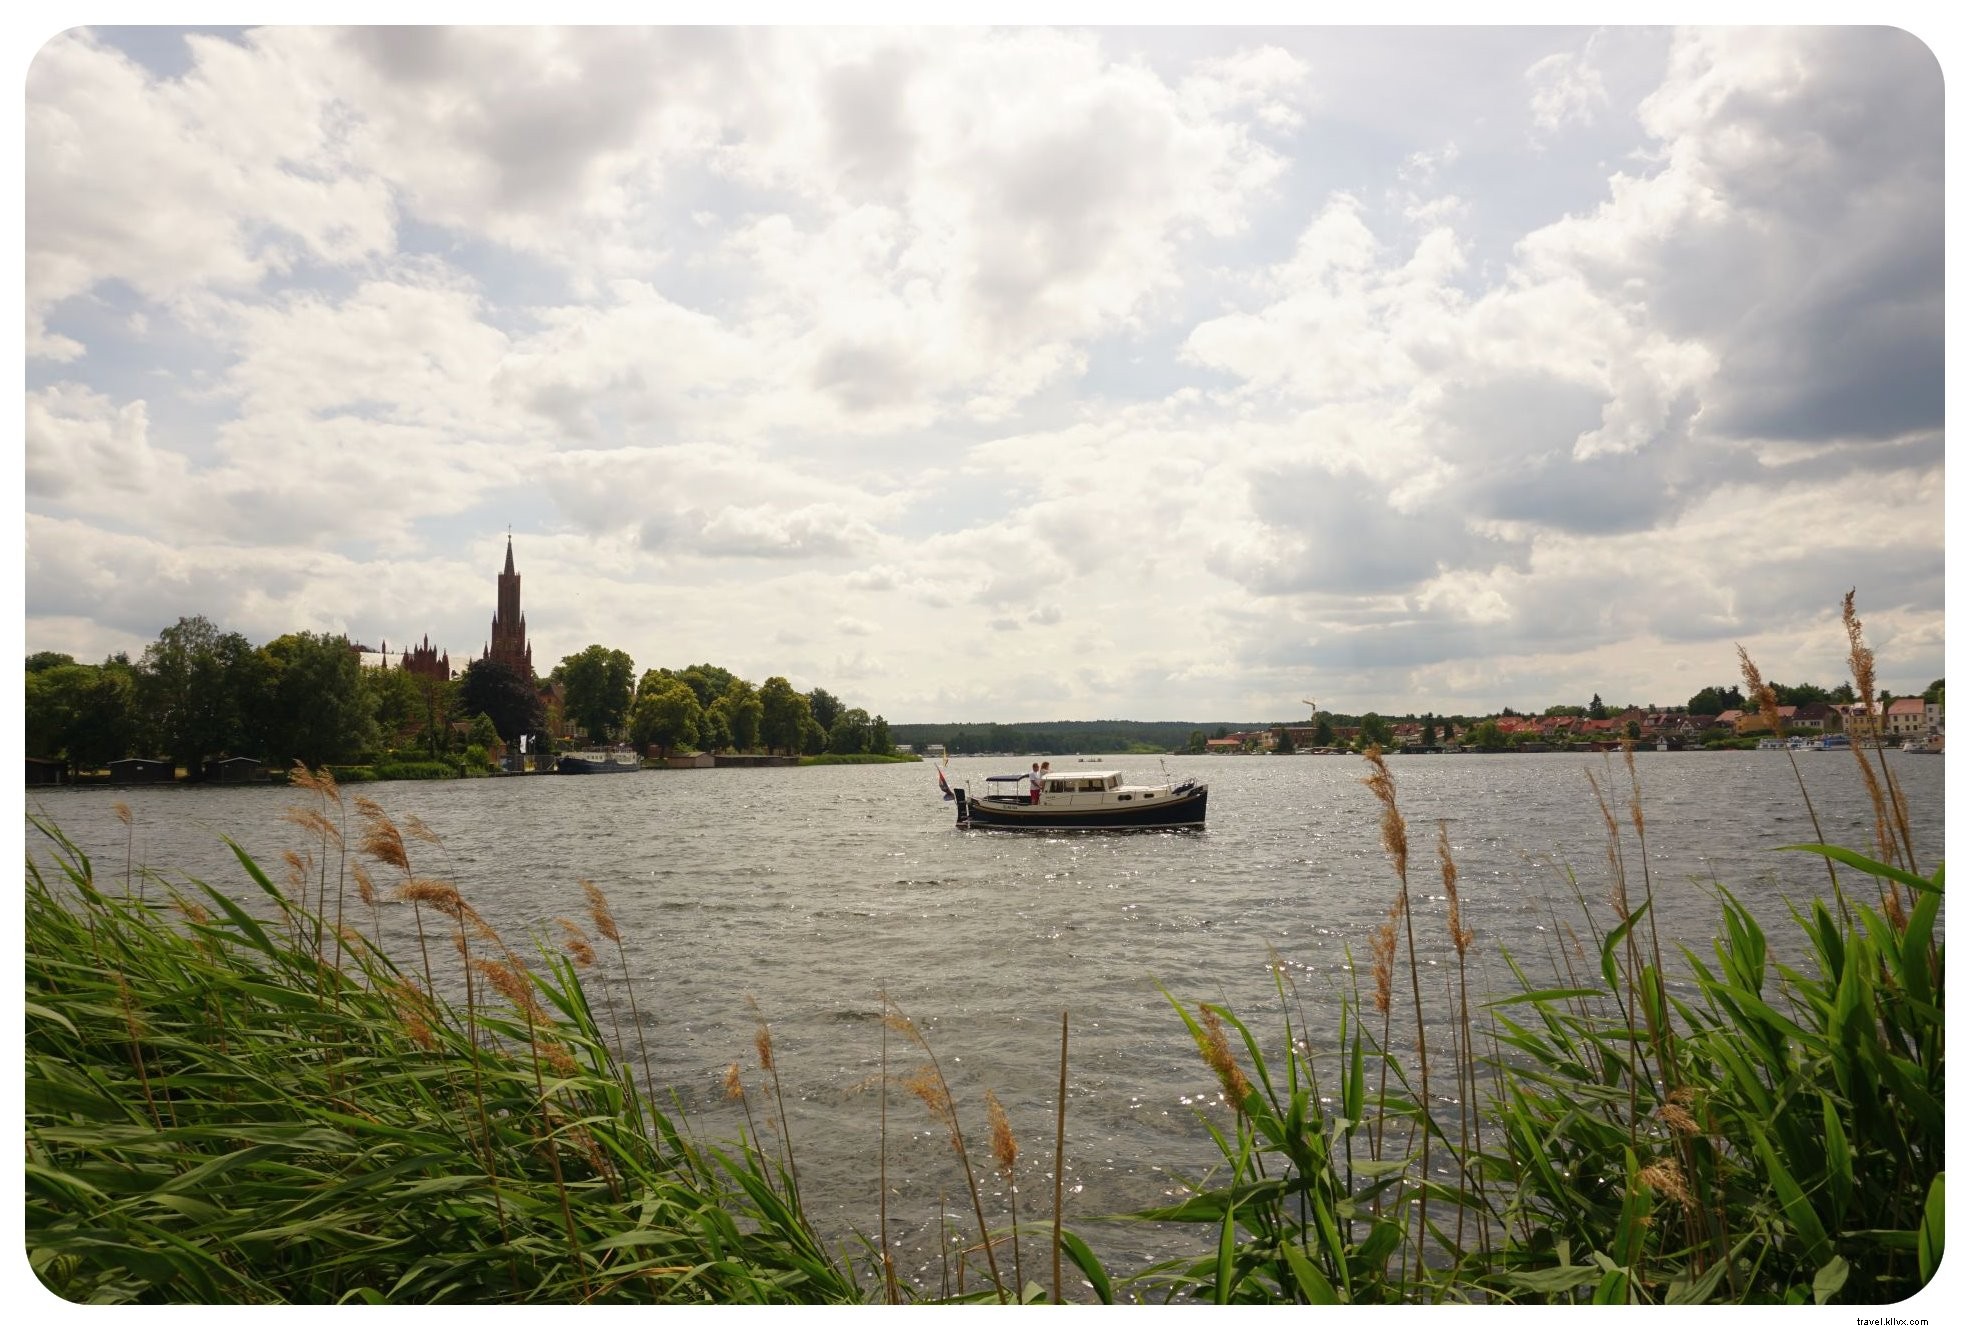 danau, Kastil dan Pantai:Perjalanan Jalan Jerman Utara